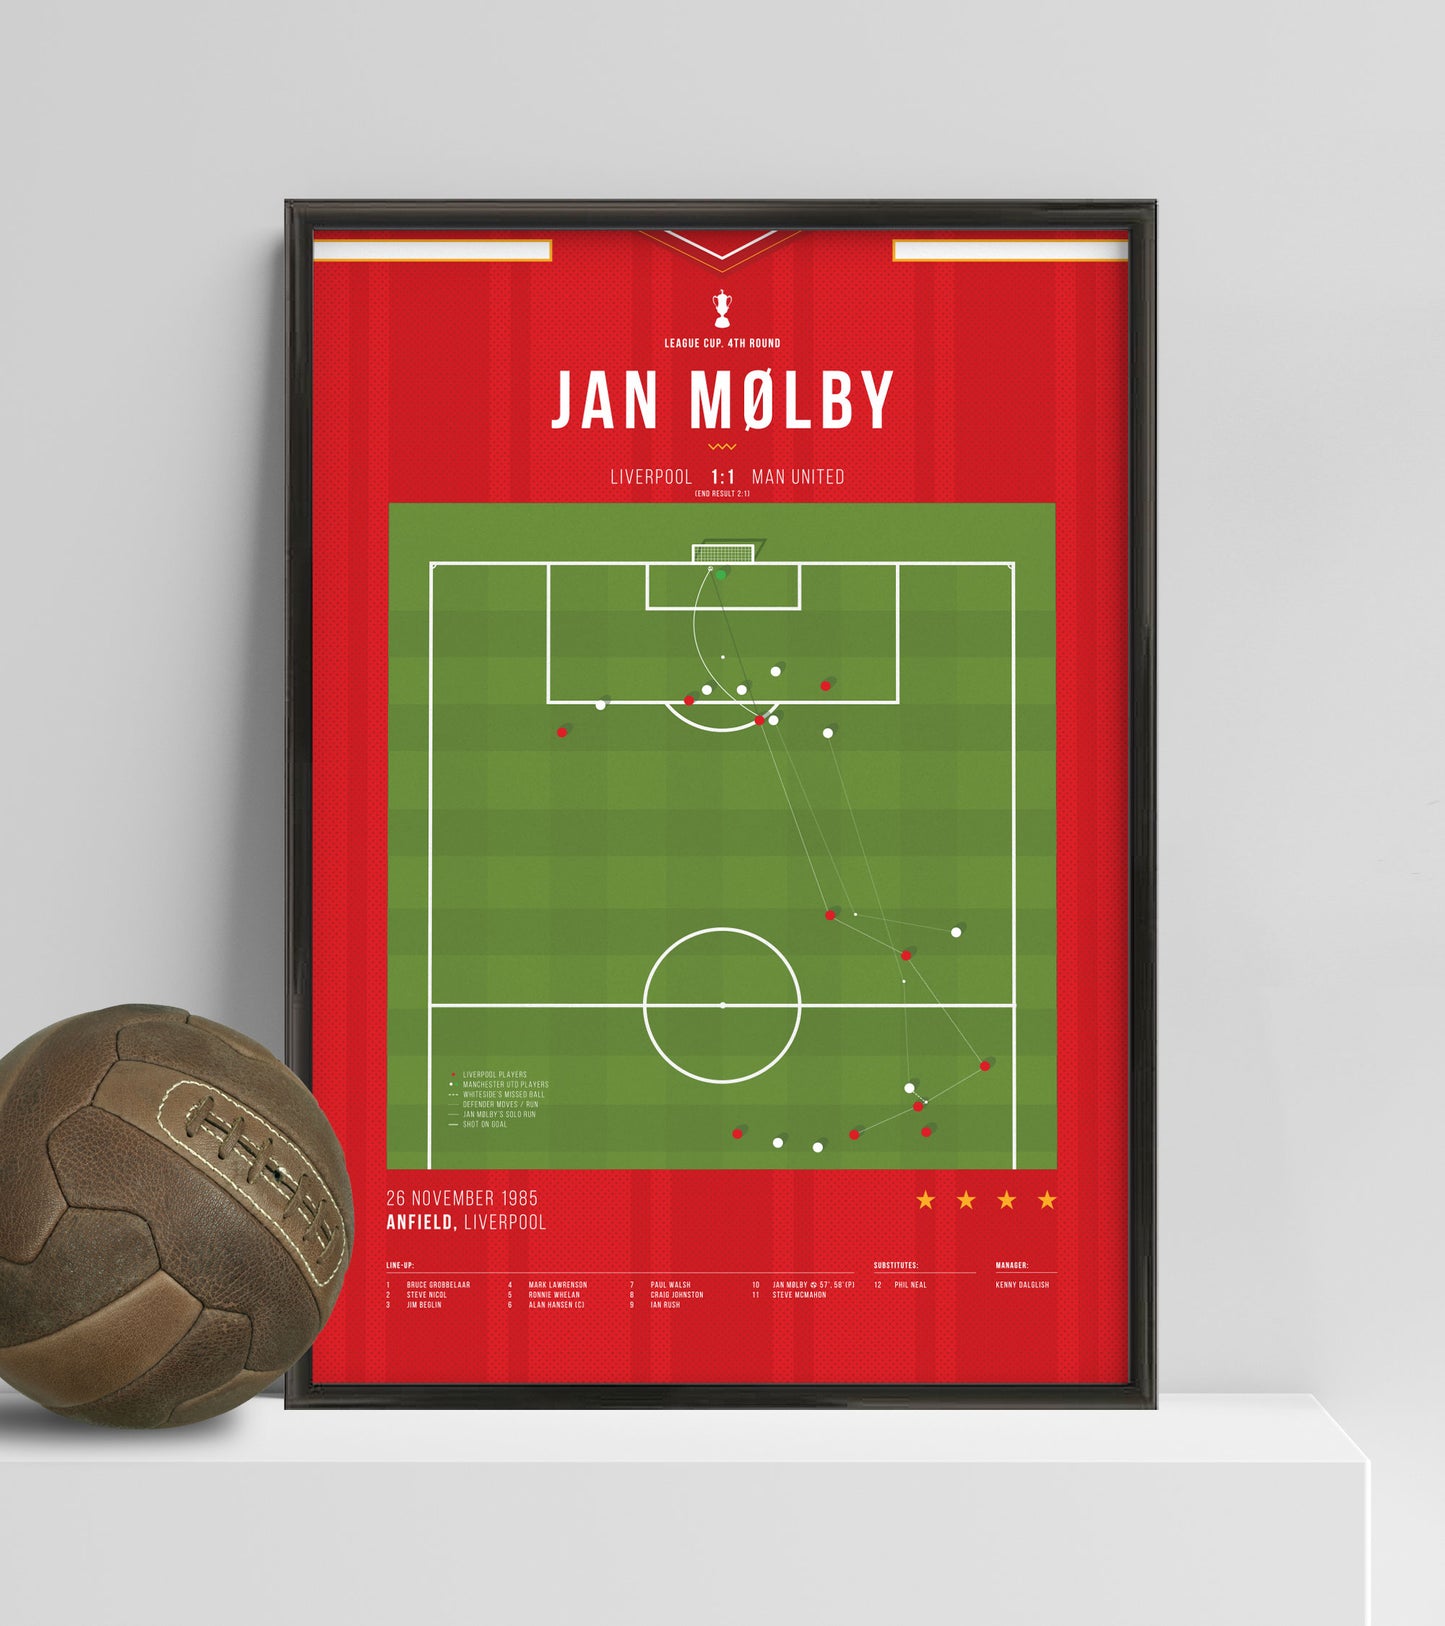 Jan Mølby Wondergoal vs Man United in 1985